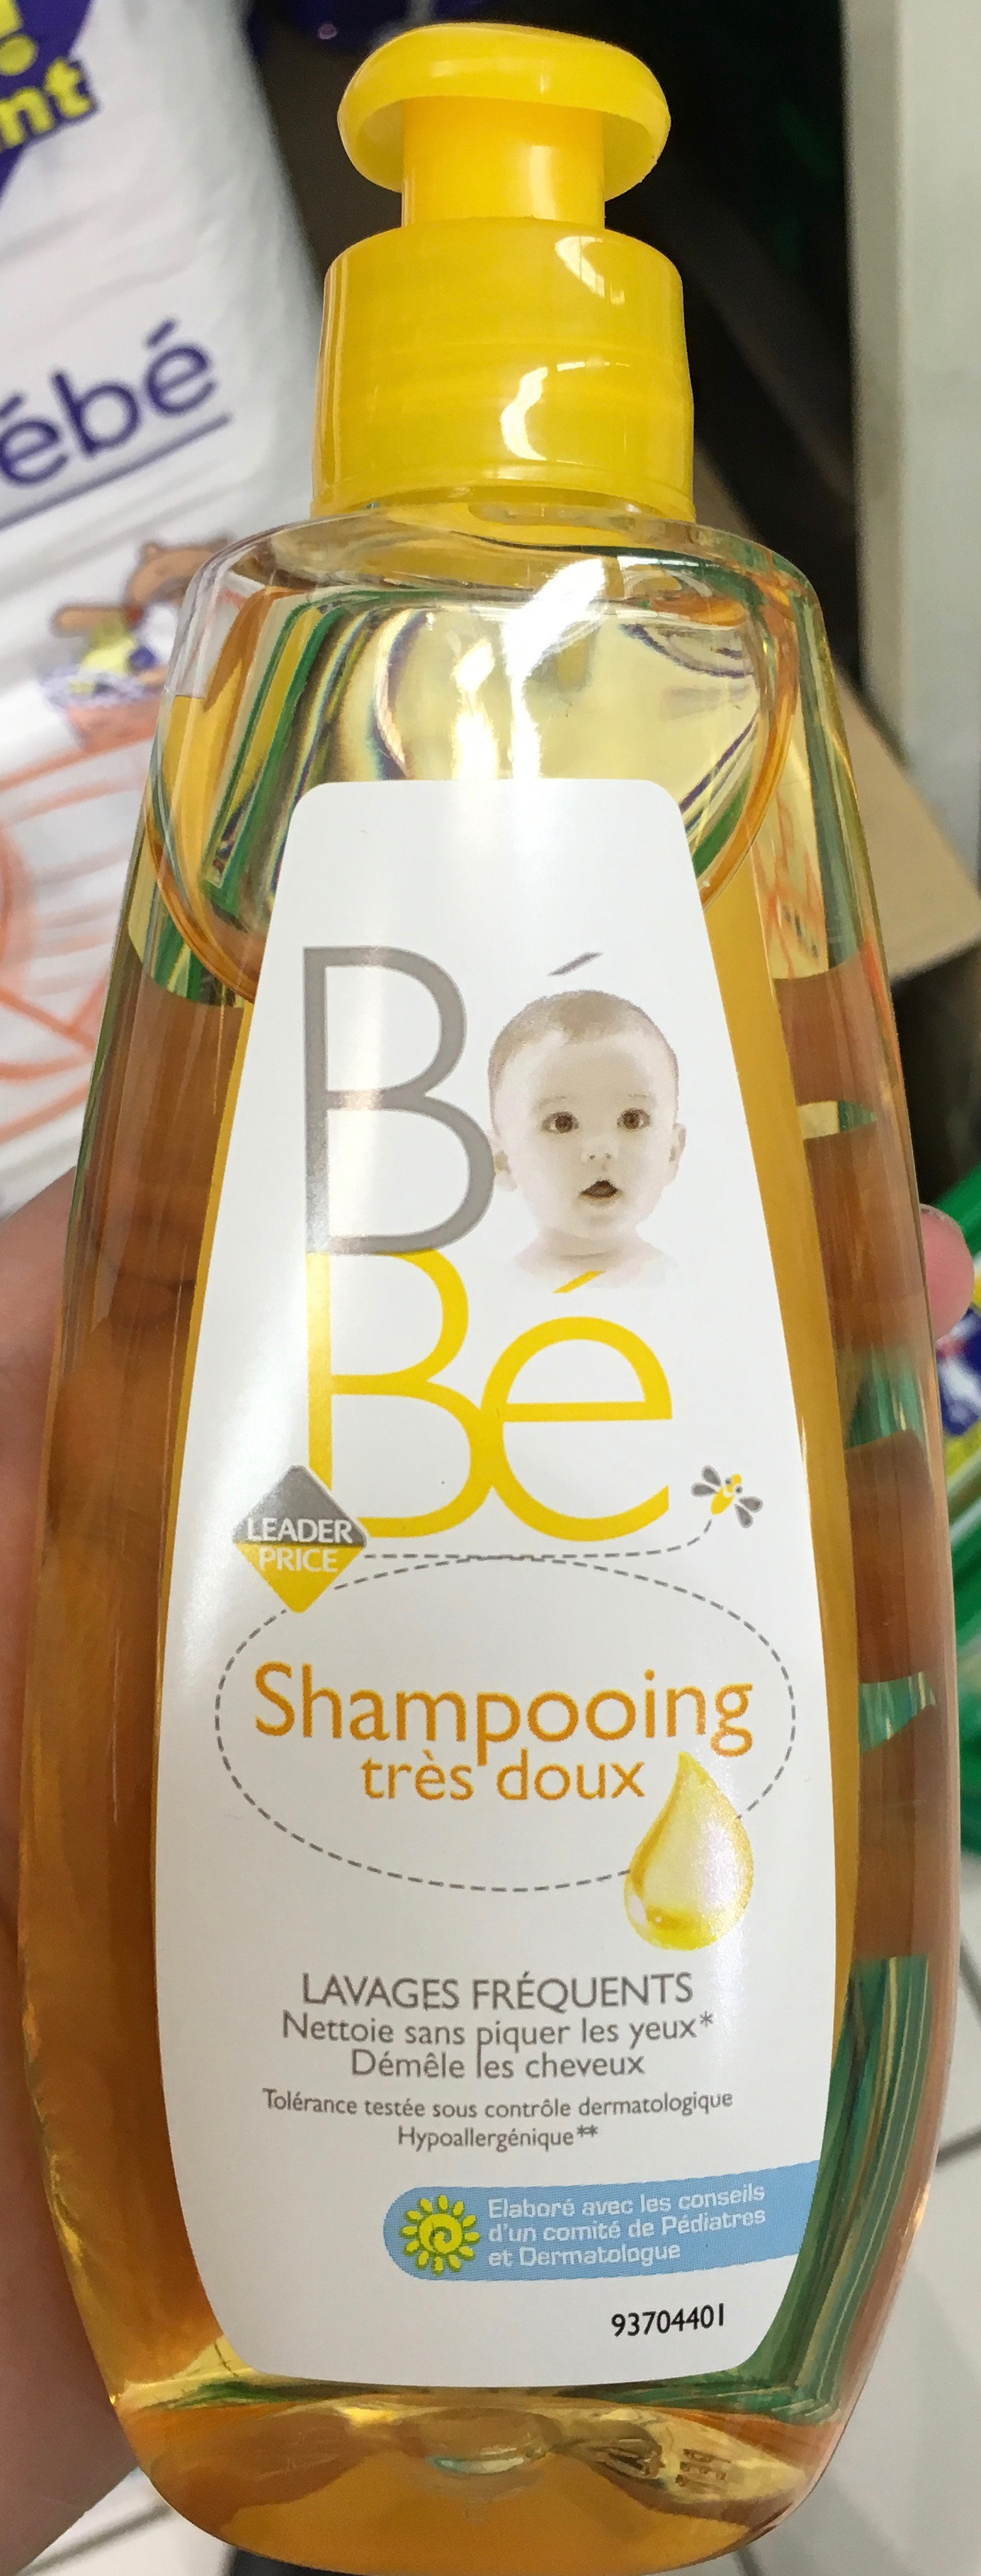 Bébé Shampooing très doux - Product - fr